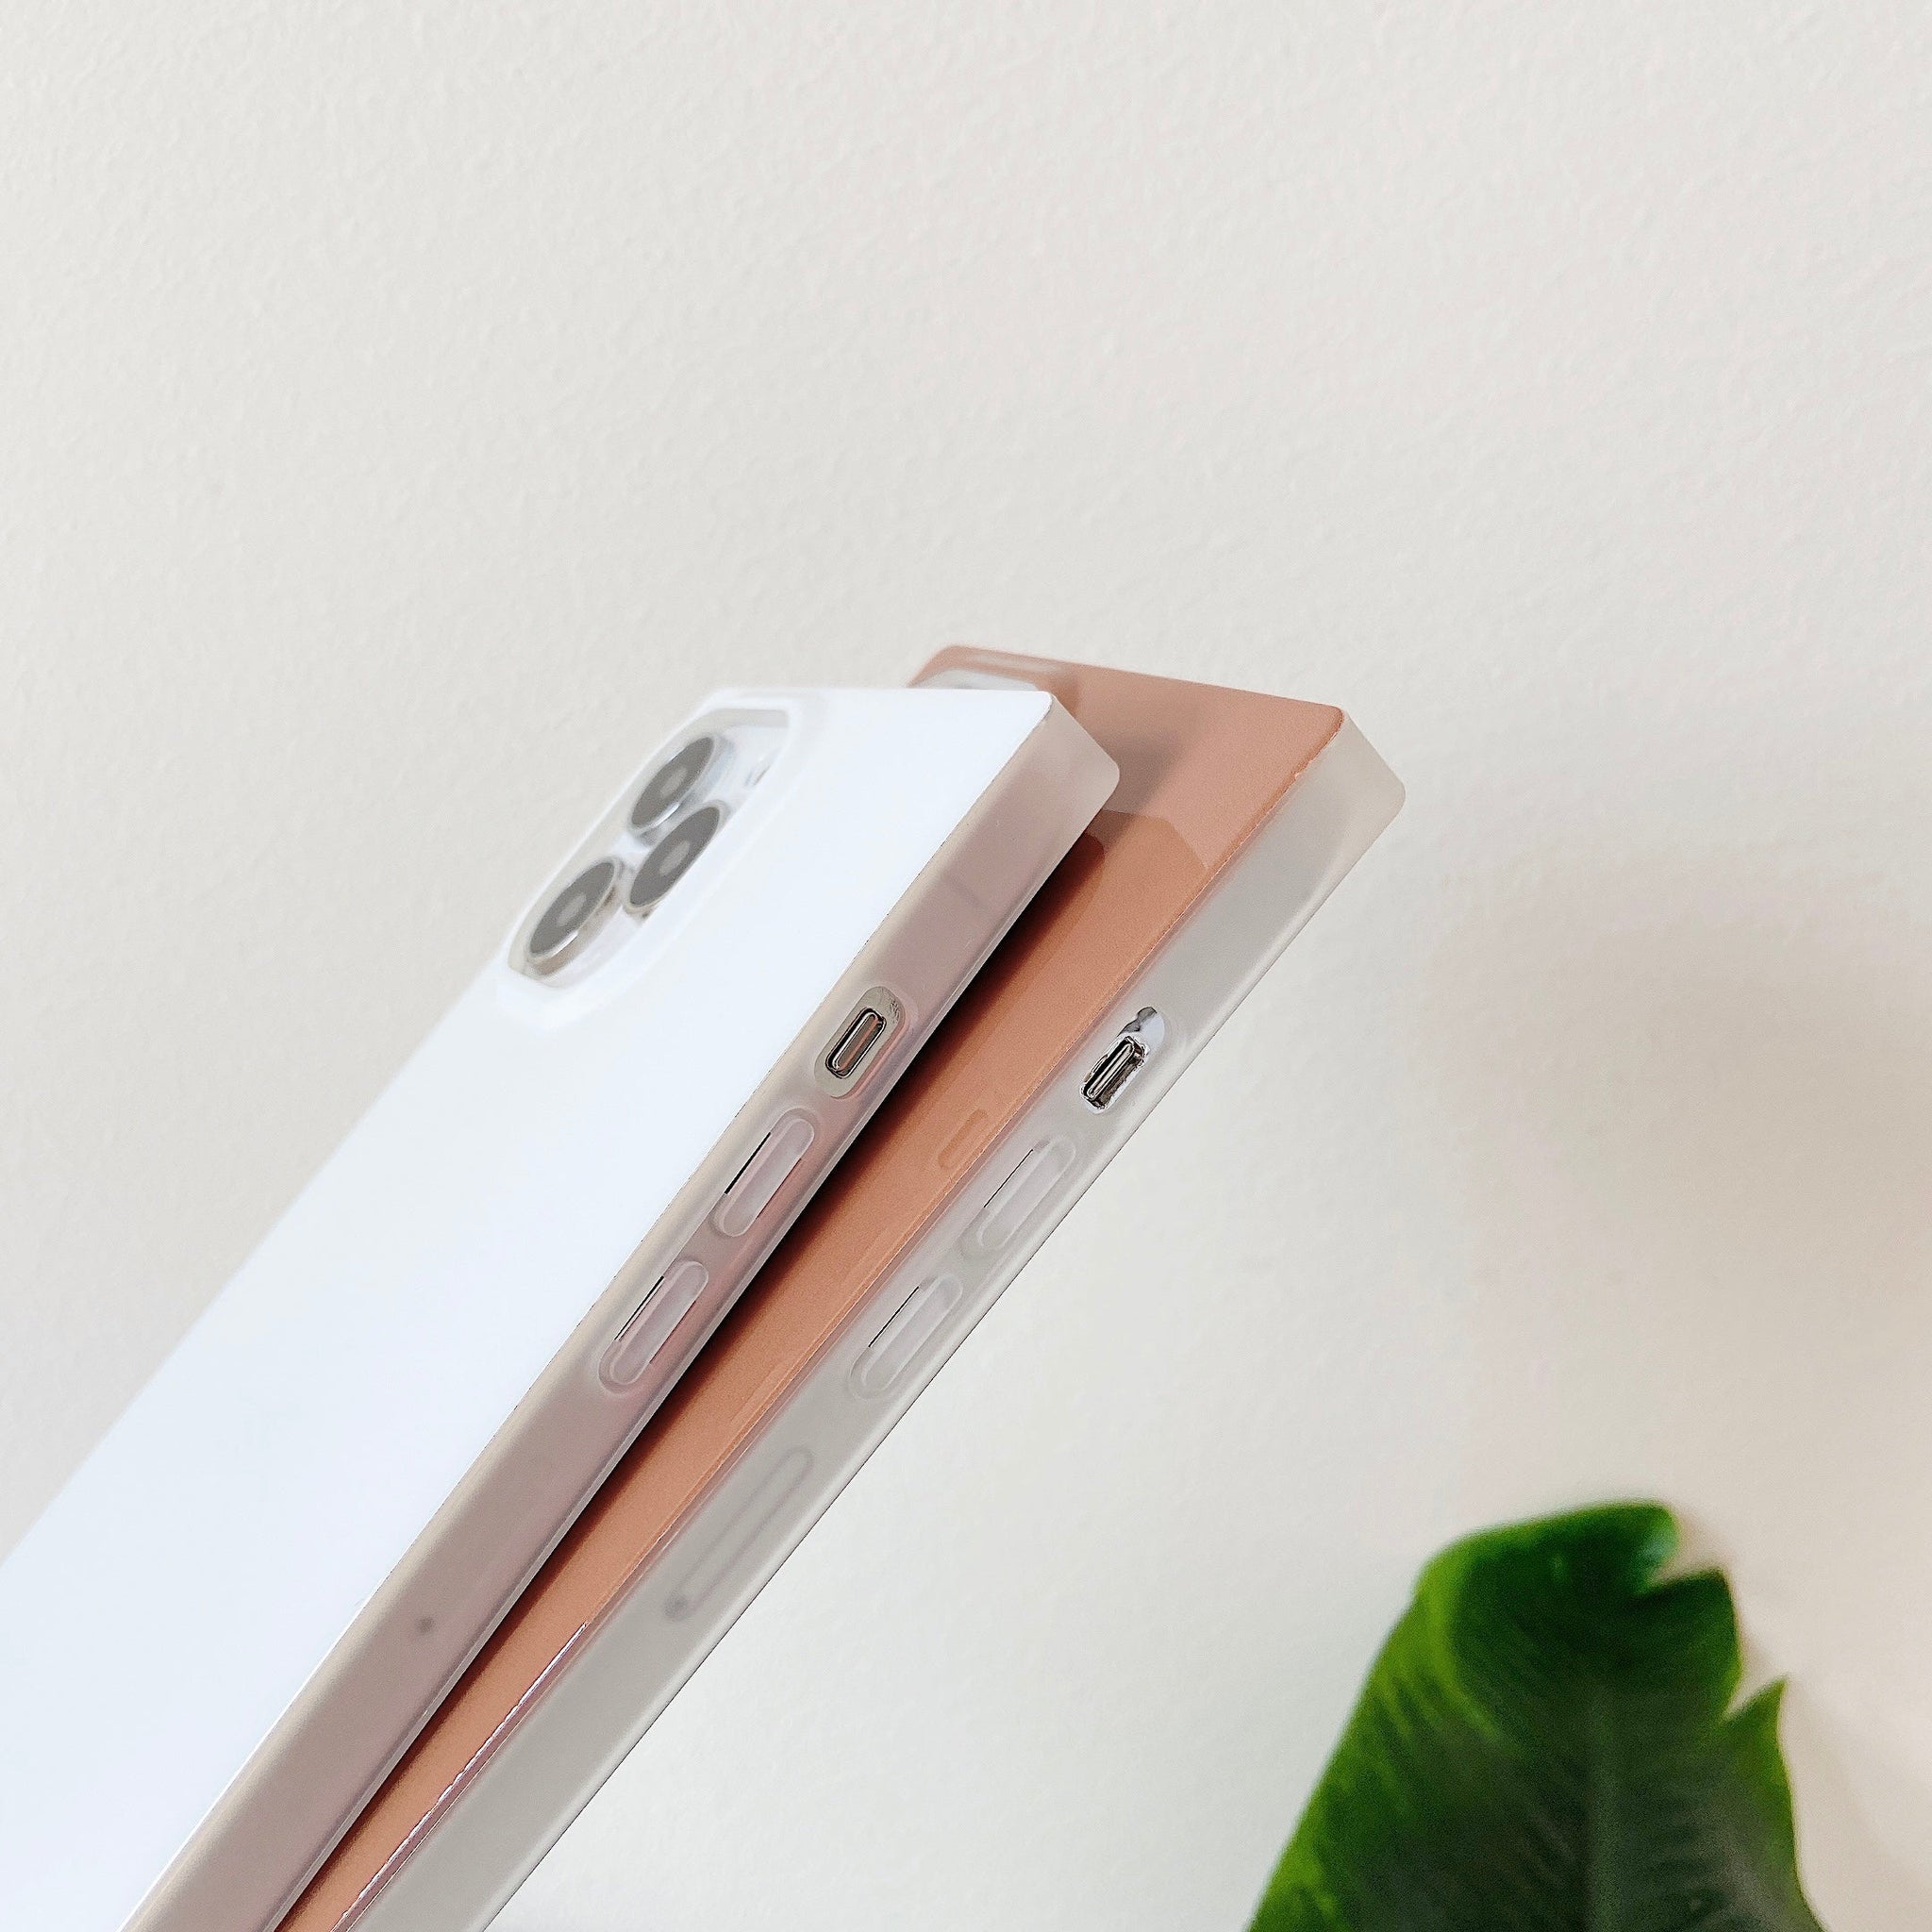 iPhone 11 Pro Max Case Square Neutral Plain Color (Caramel)